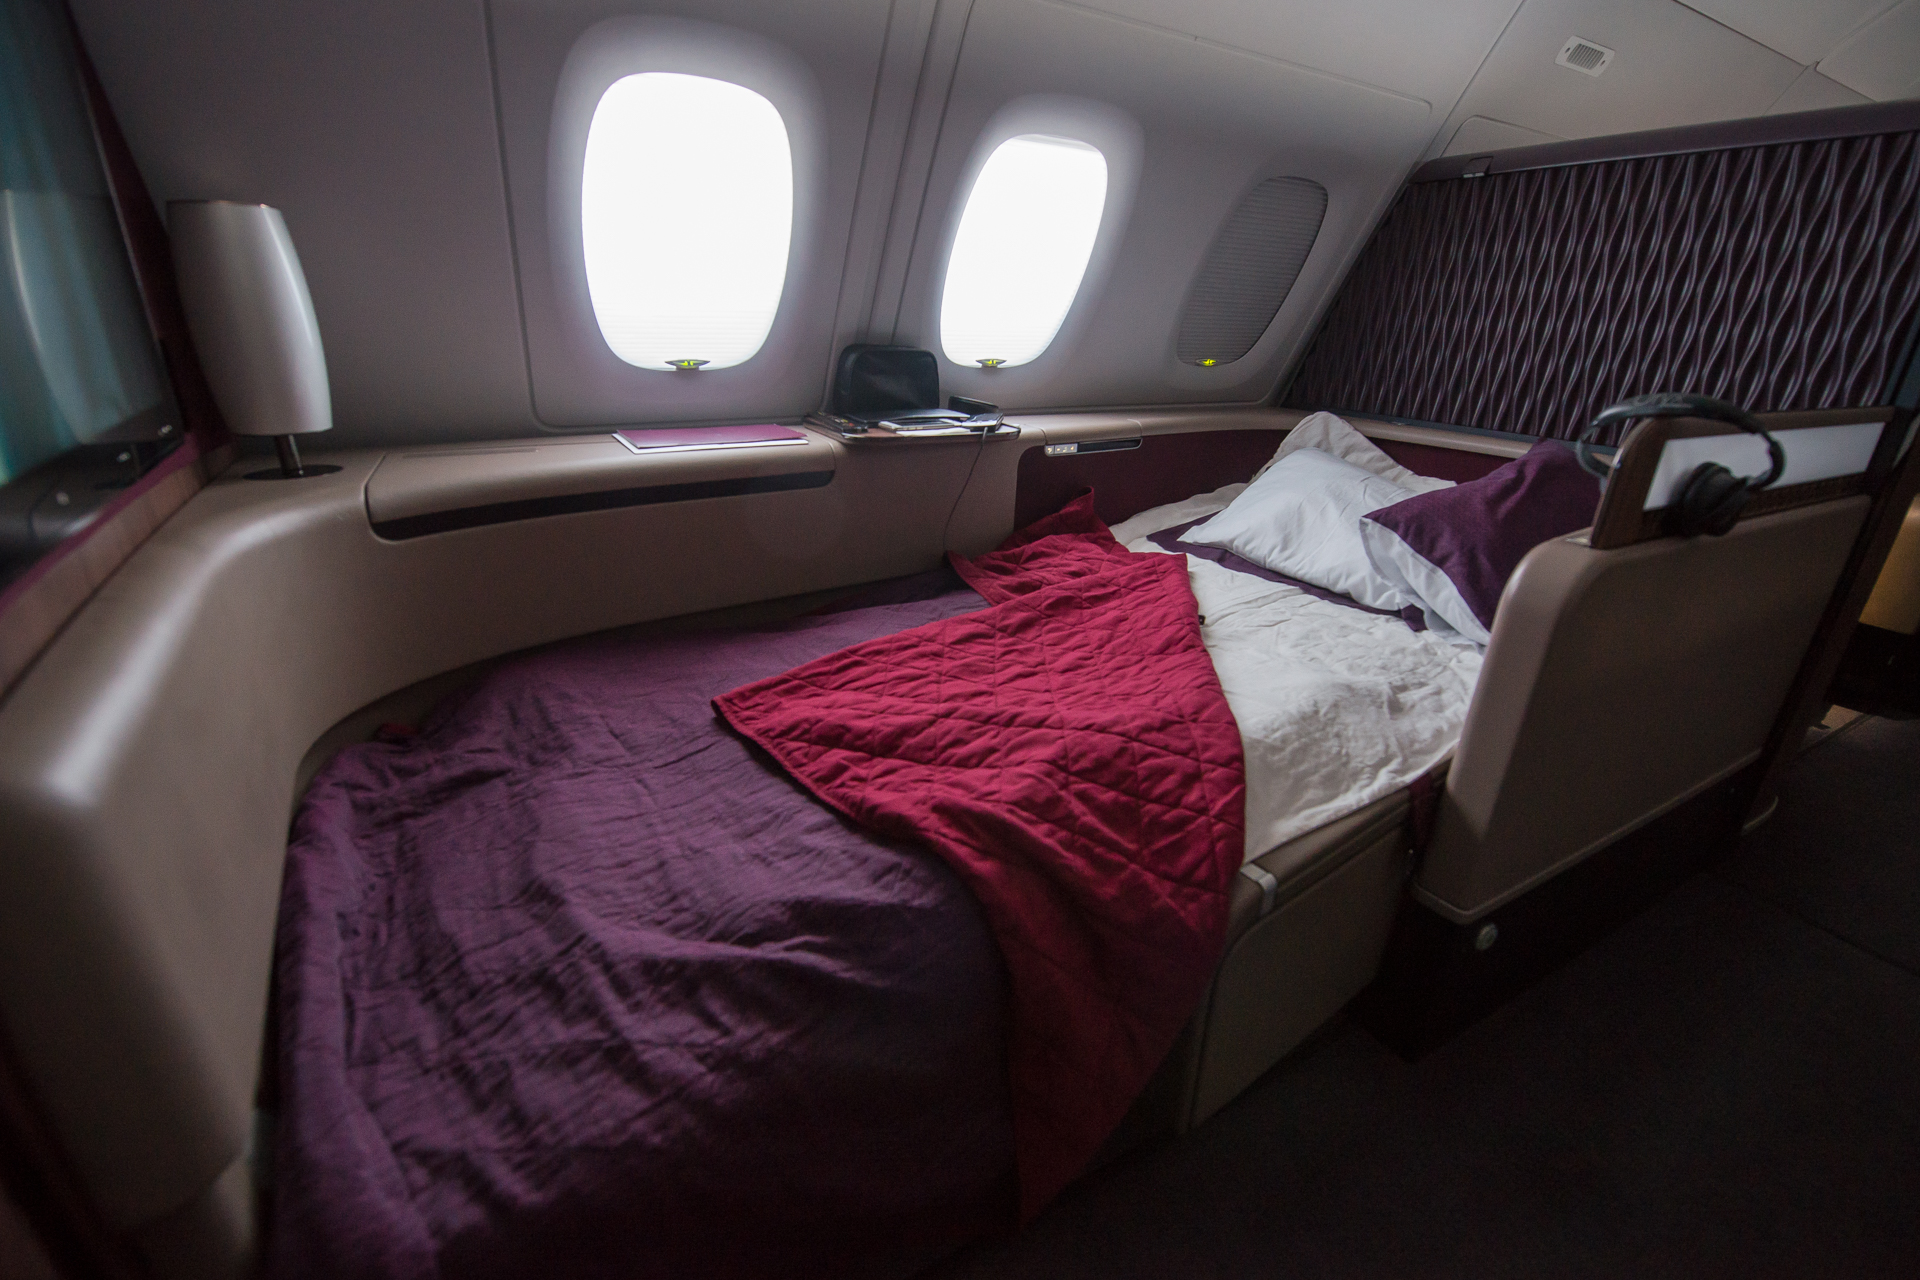 Qatar Airways A380 First Class Bed